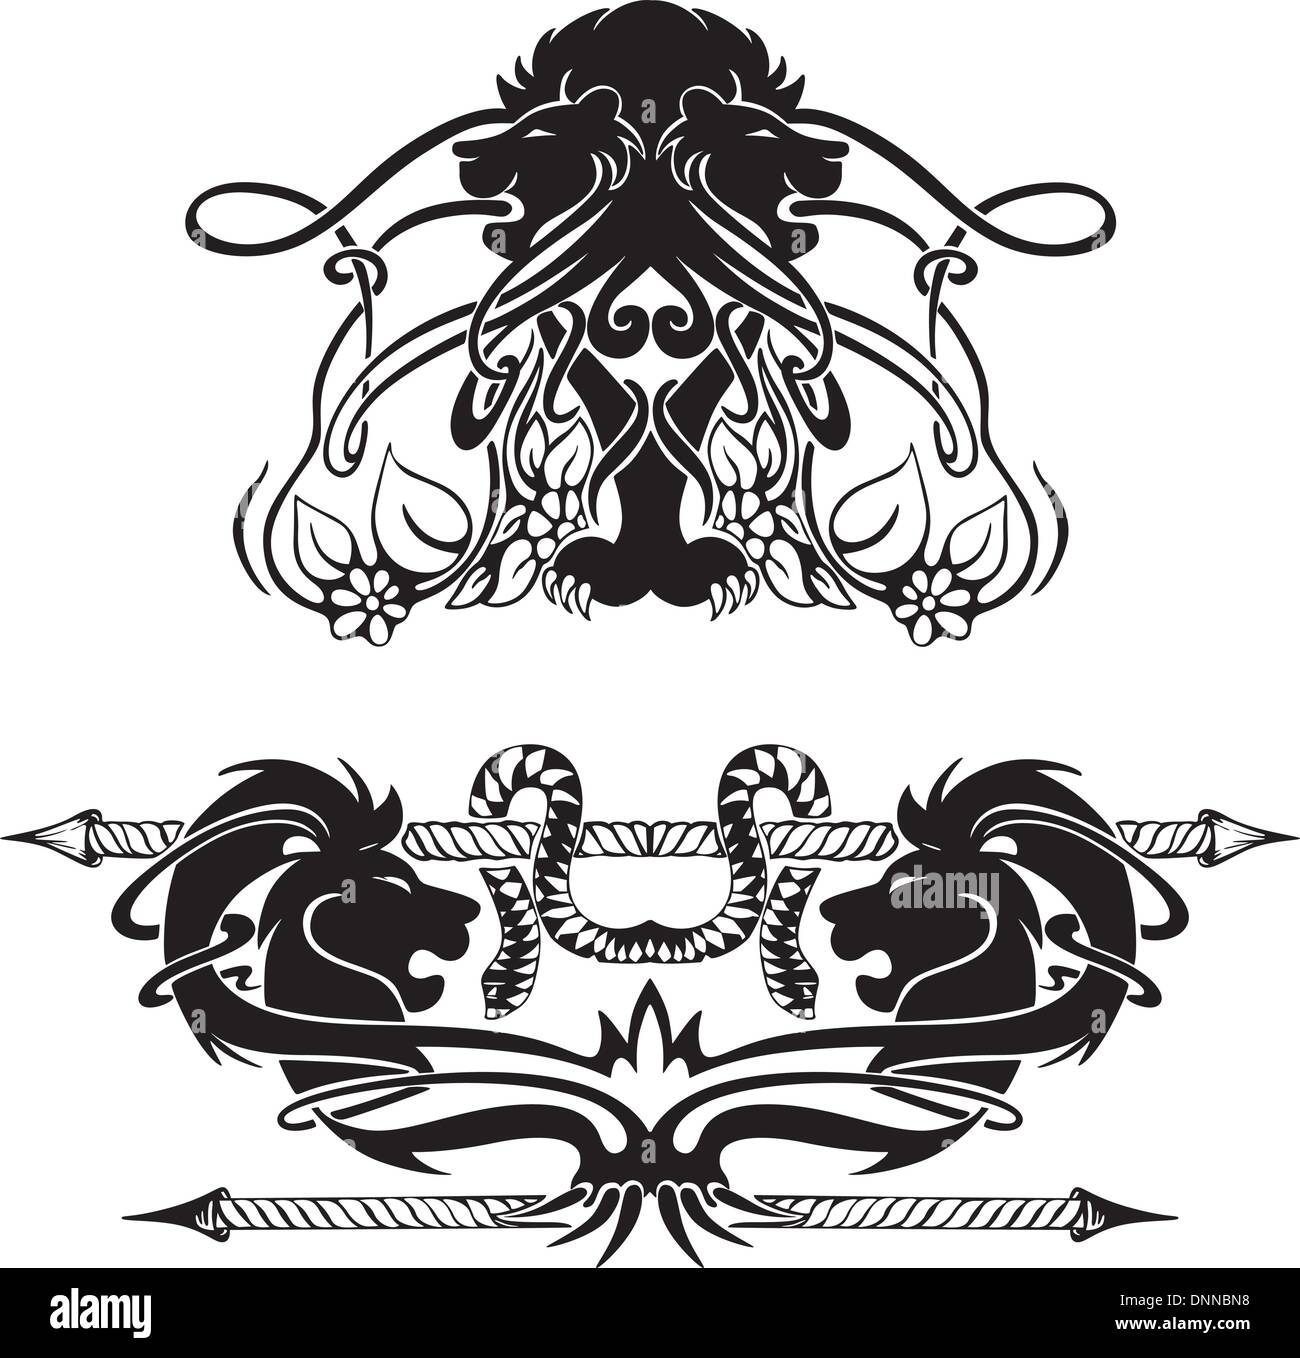 Stilisierte symmetrische Vignetten mit Löwen. Vektor-Illustration EPS8 Stock Vektor